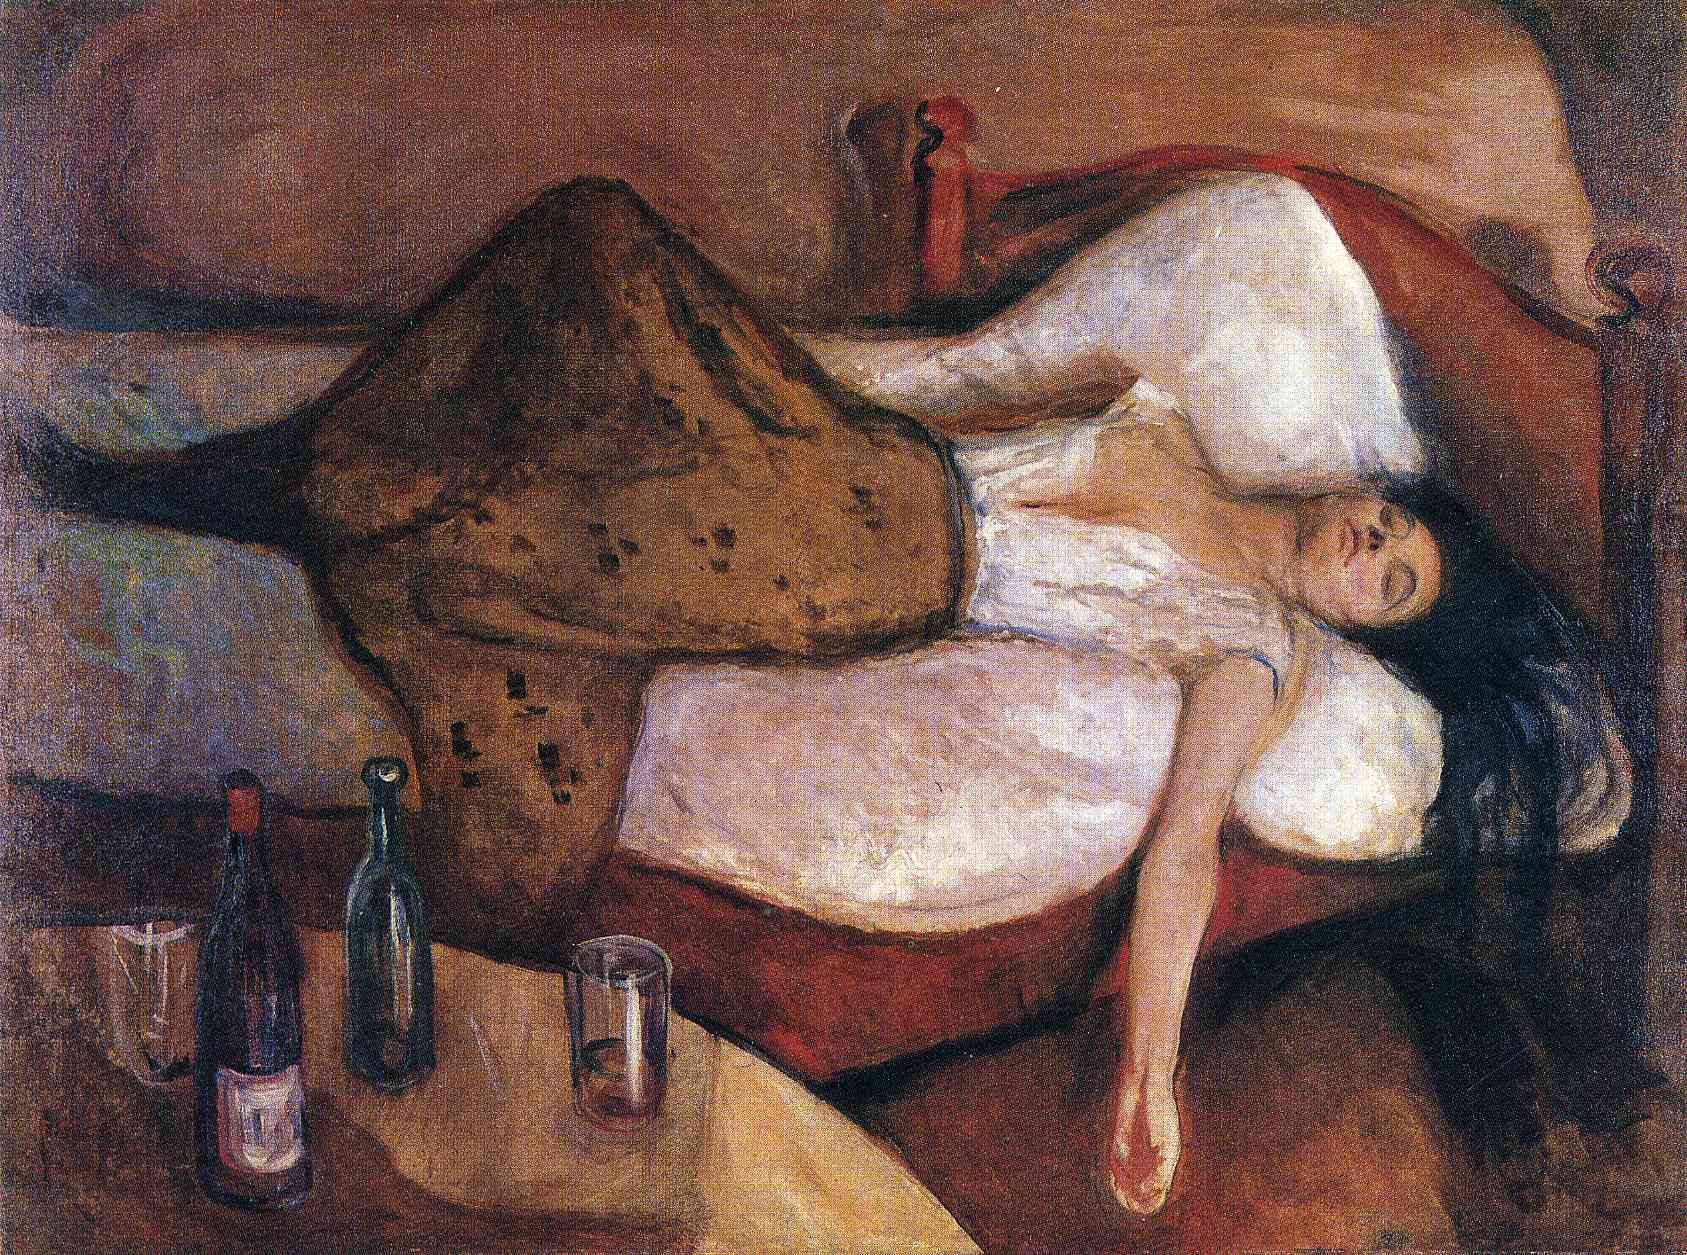 Il giorno dopo by Edvard Munch - 1894/95 - 115 x 152 cm 